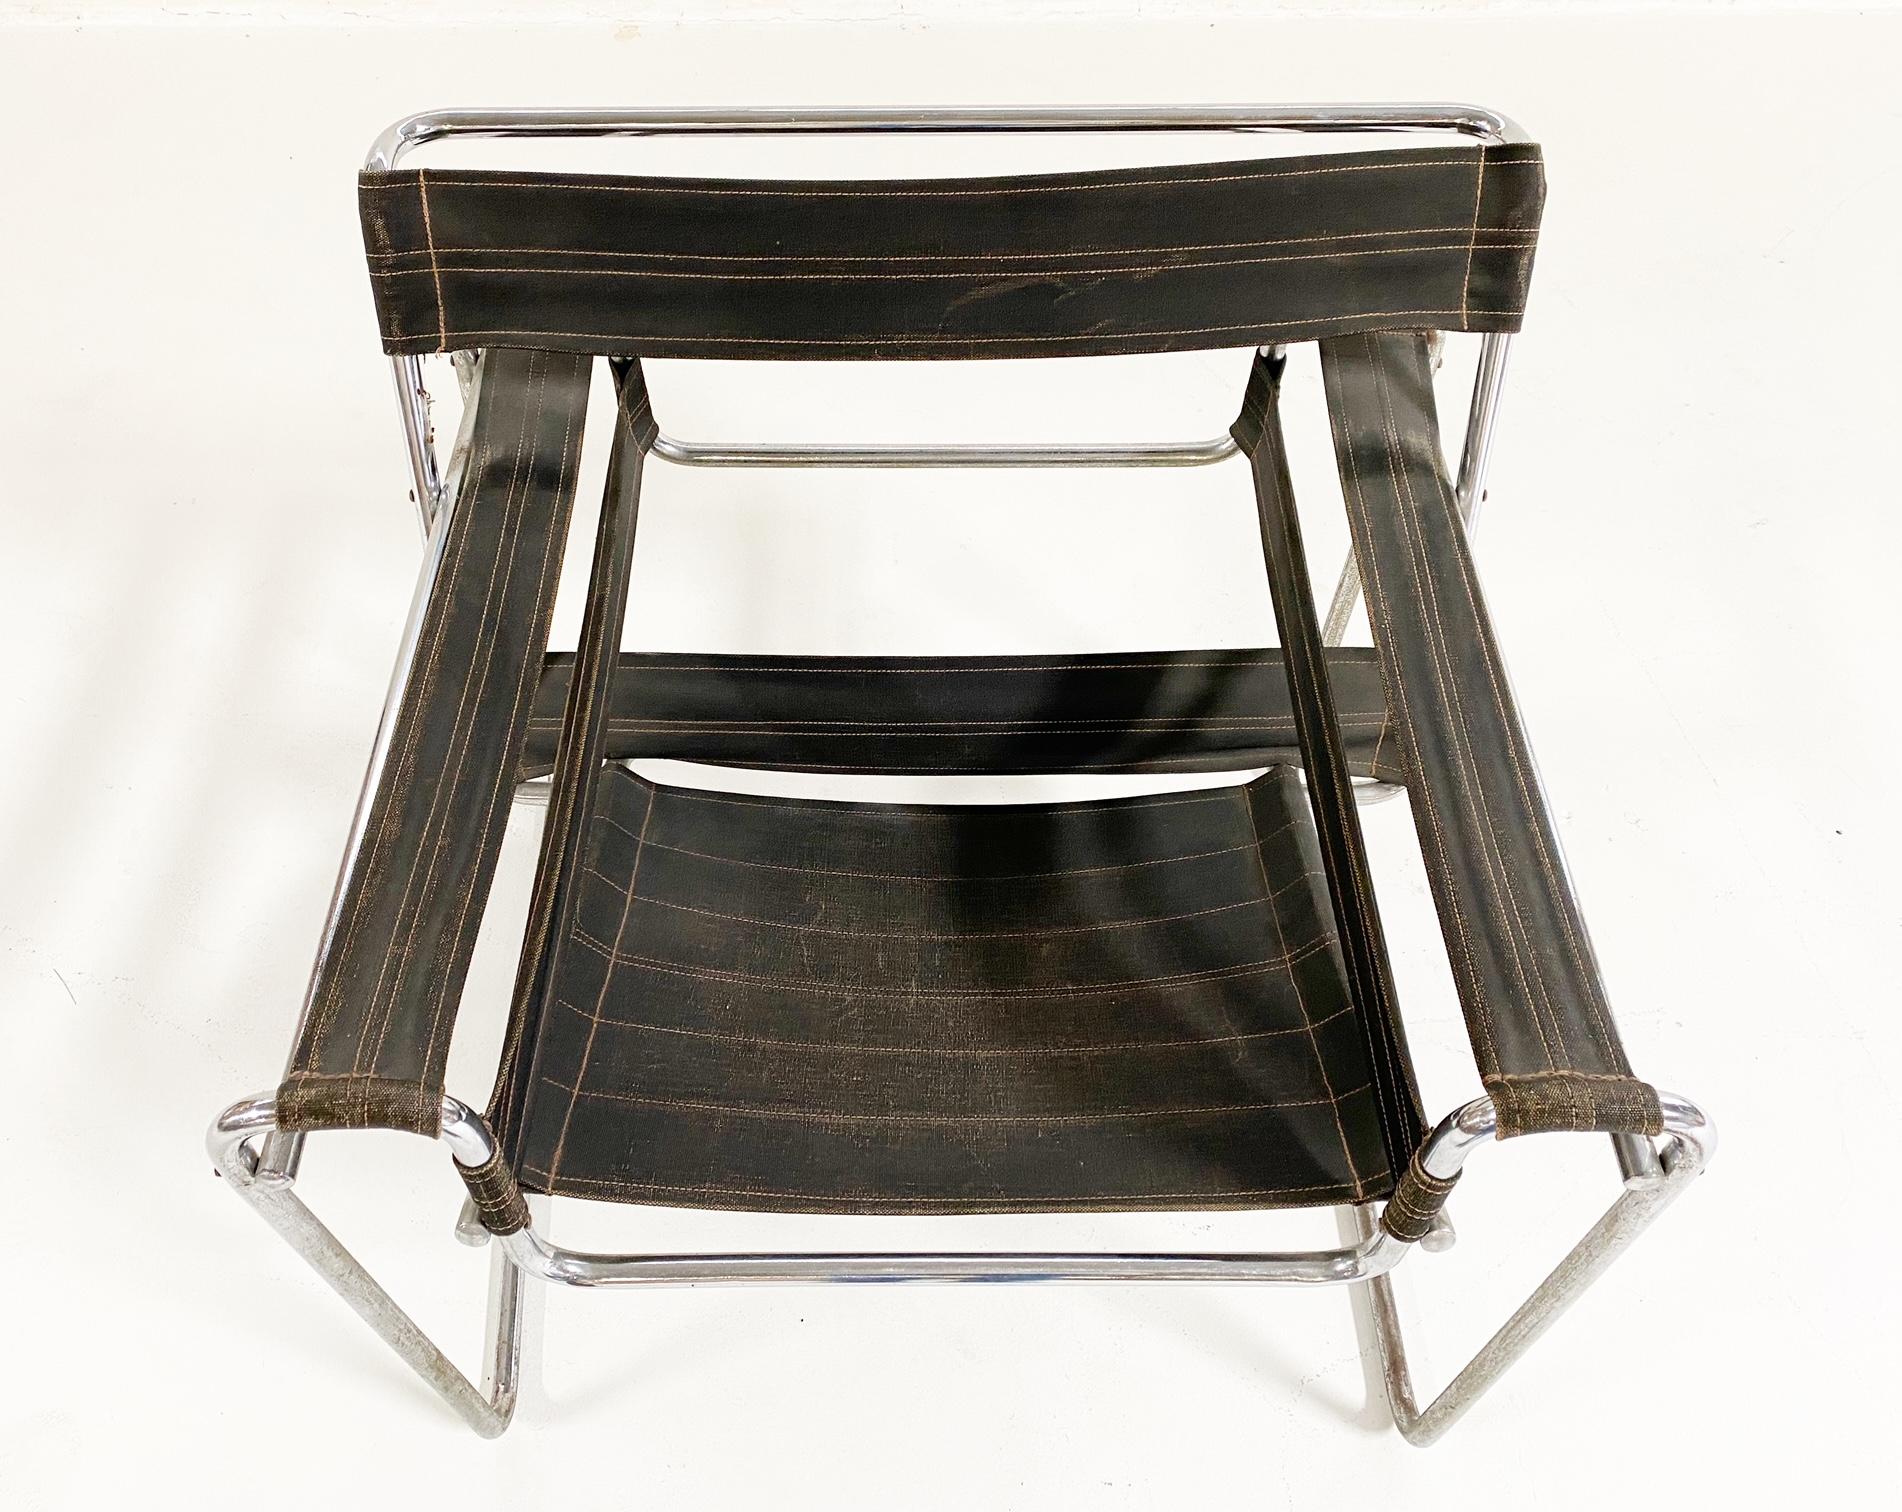 Dies ist eine frühe Wassily-Ausgabe des Berliner Herstellers Standard-Möbel. Es weist die originale schwarze Eisengarn-Leinwand auf. Ein wahrhaft ikonisches Design, das einen Platz in einem Museum verdient hätte.

Vorbild für diesen Sessel ist der